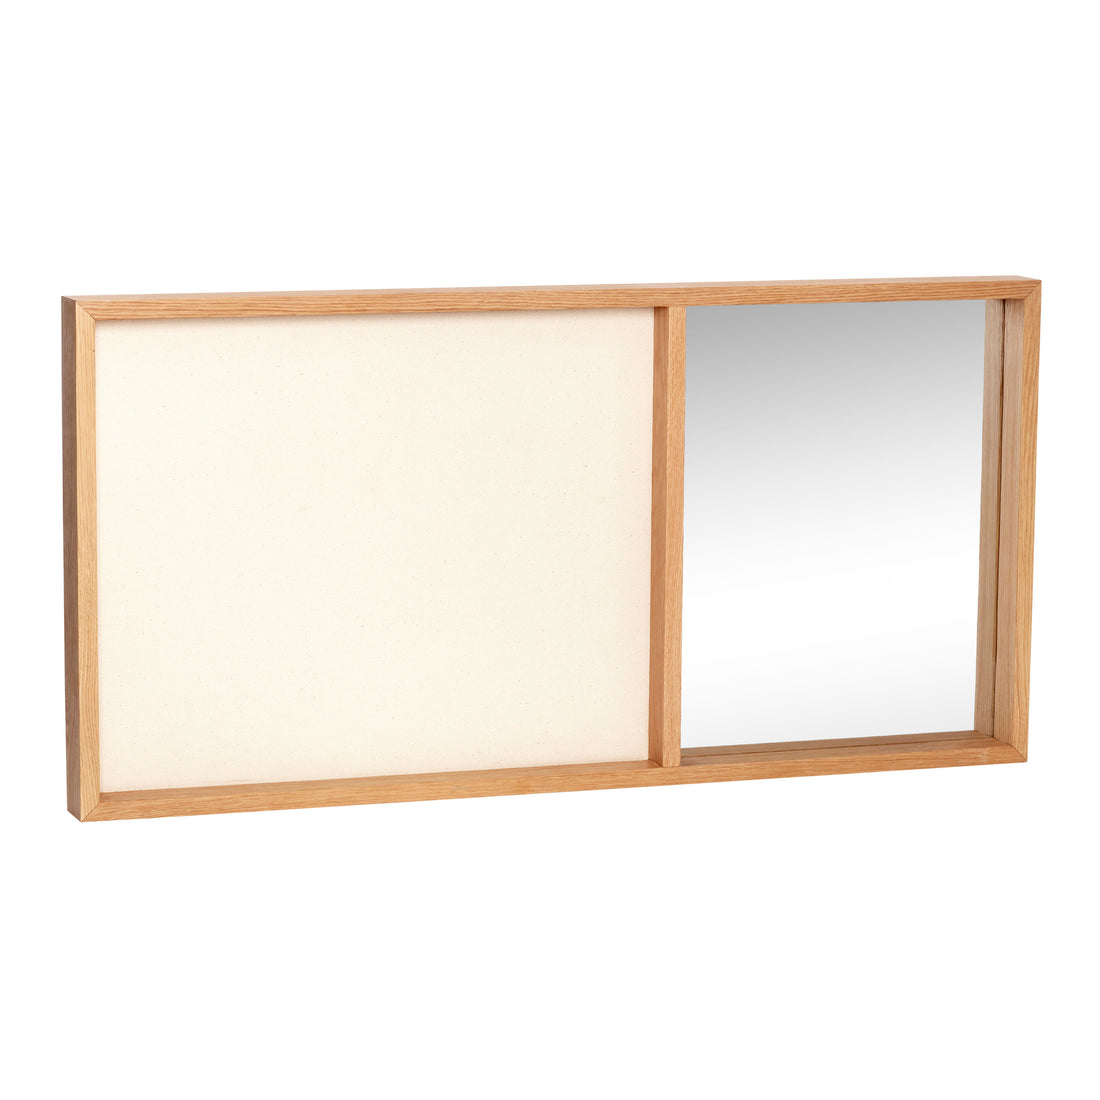 Hübsch - Placa de terminação com espelho, tela/vidro/carvalho, fsc, bege/natureza - 80x5xh40cm